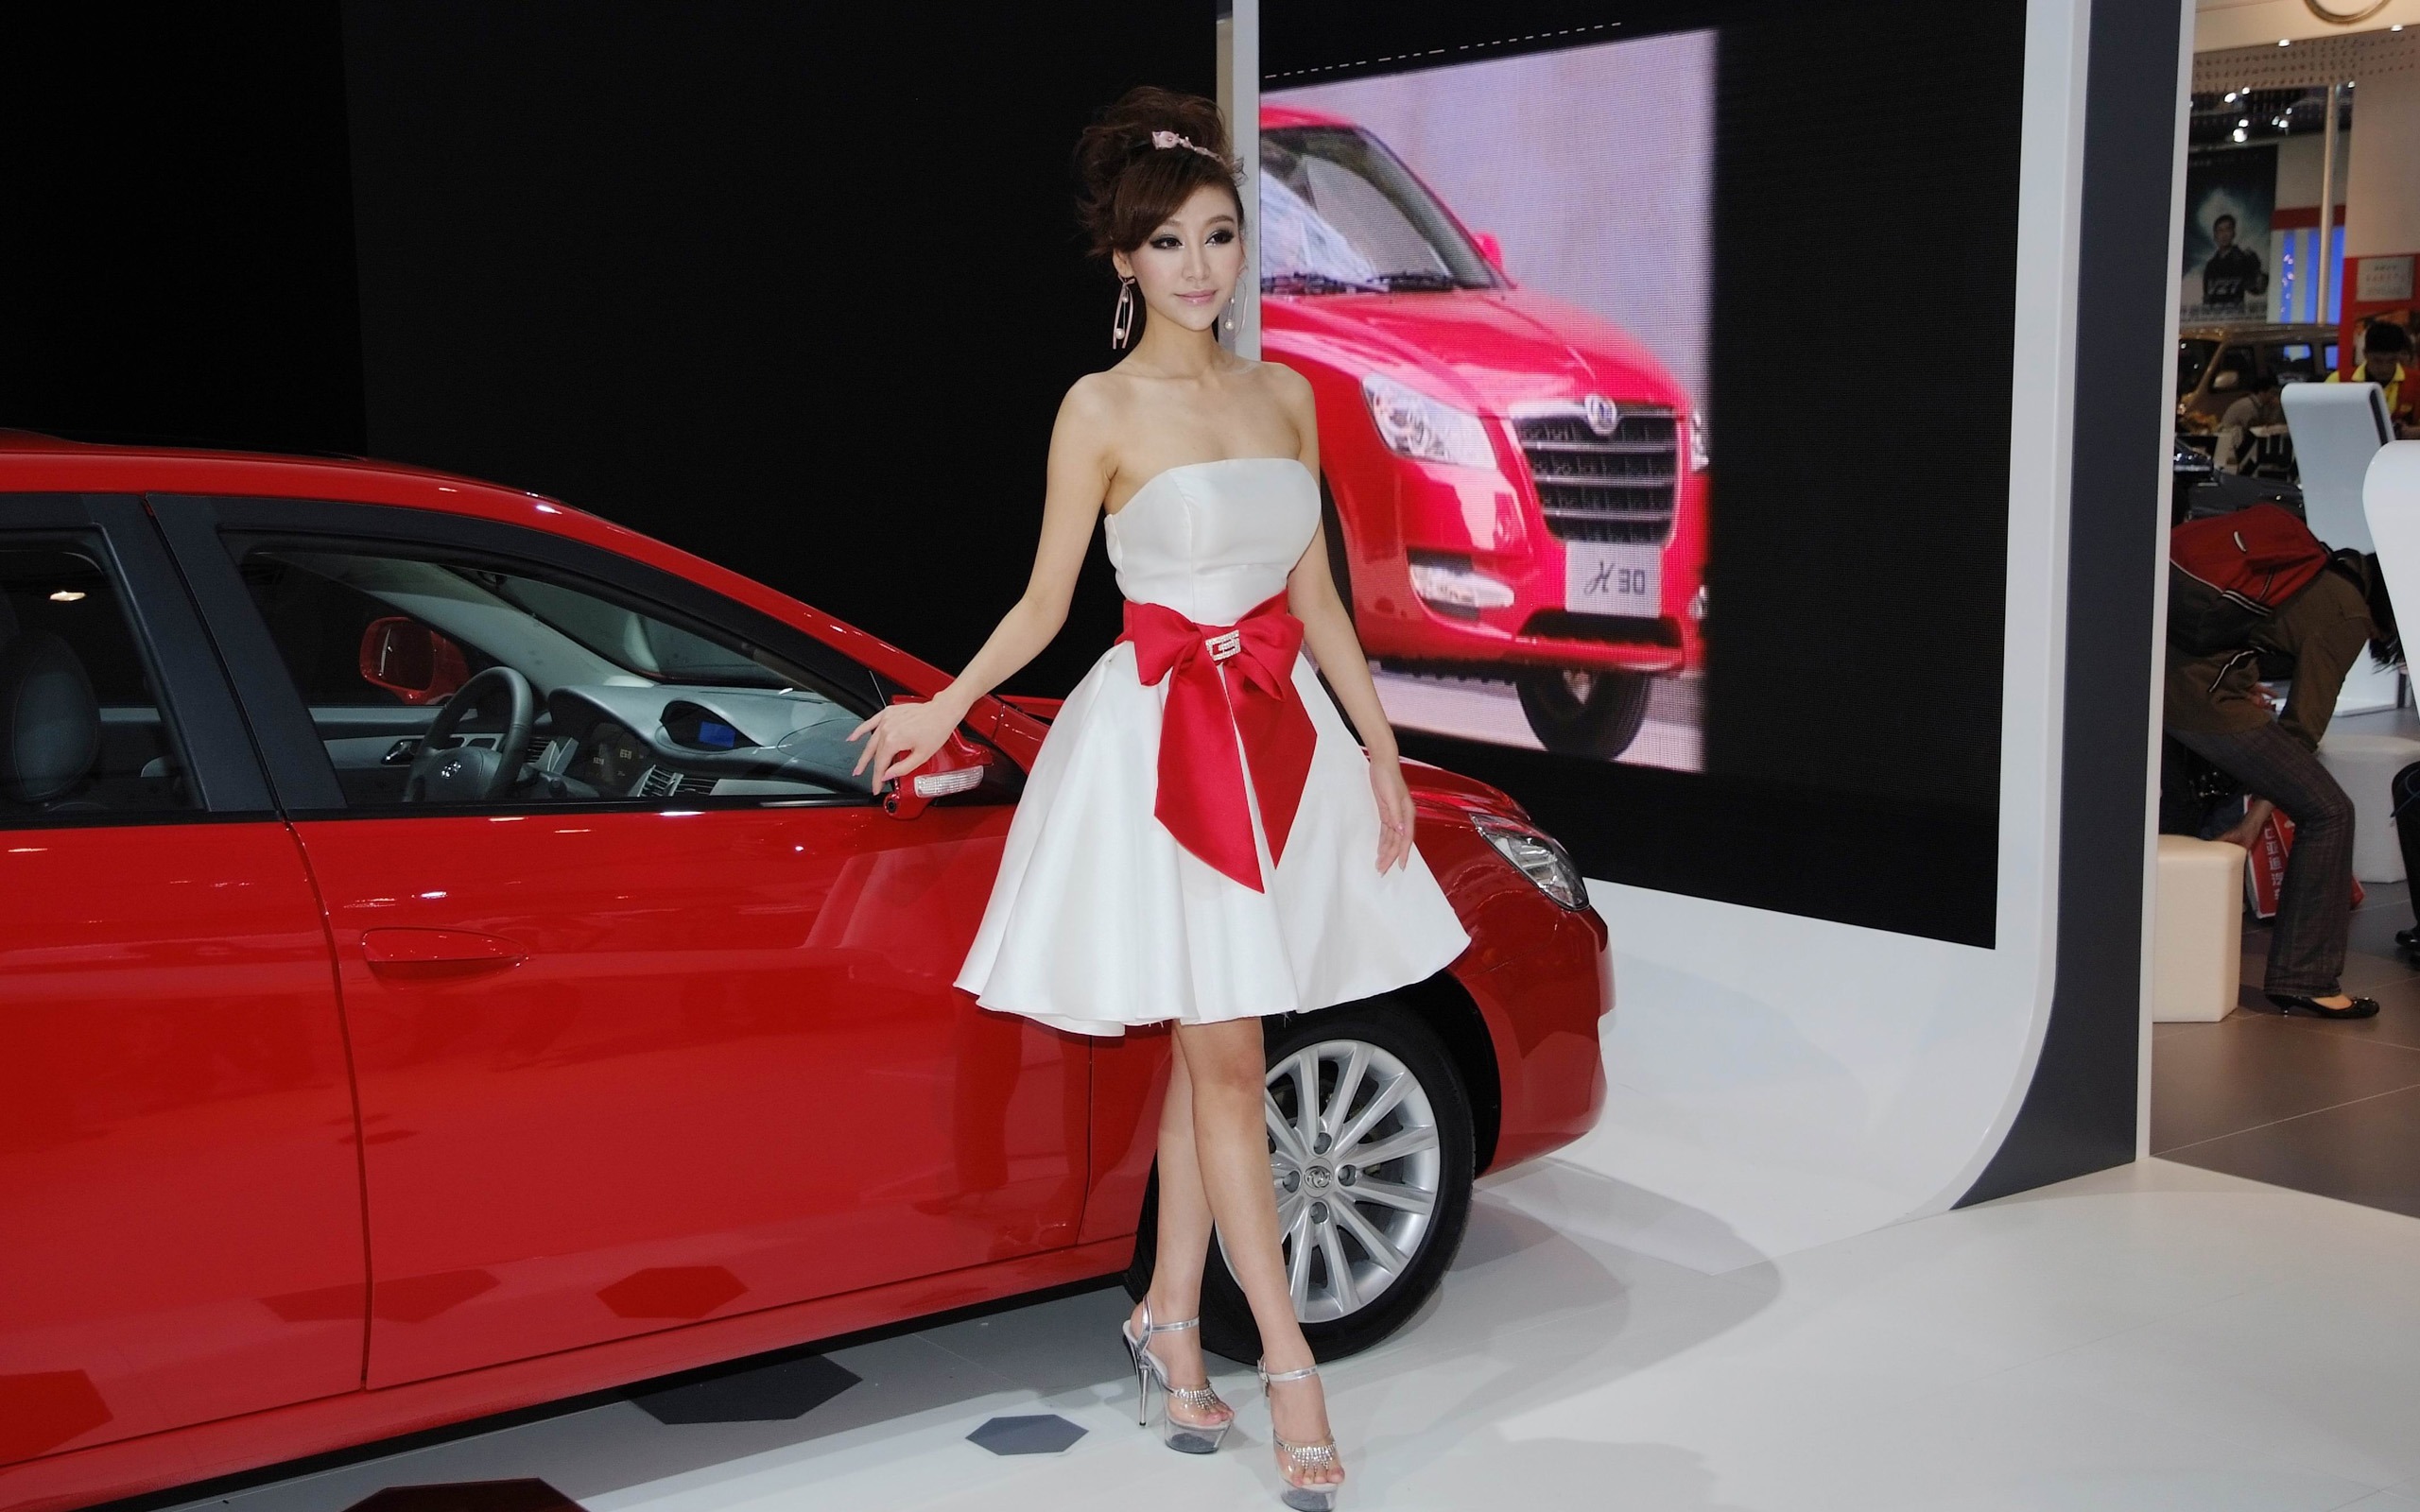 2010北京国际车展 美女车模 (螺纹钢作品)8 - 2560x1600